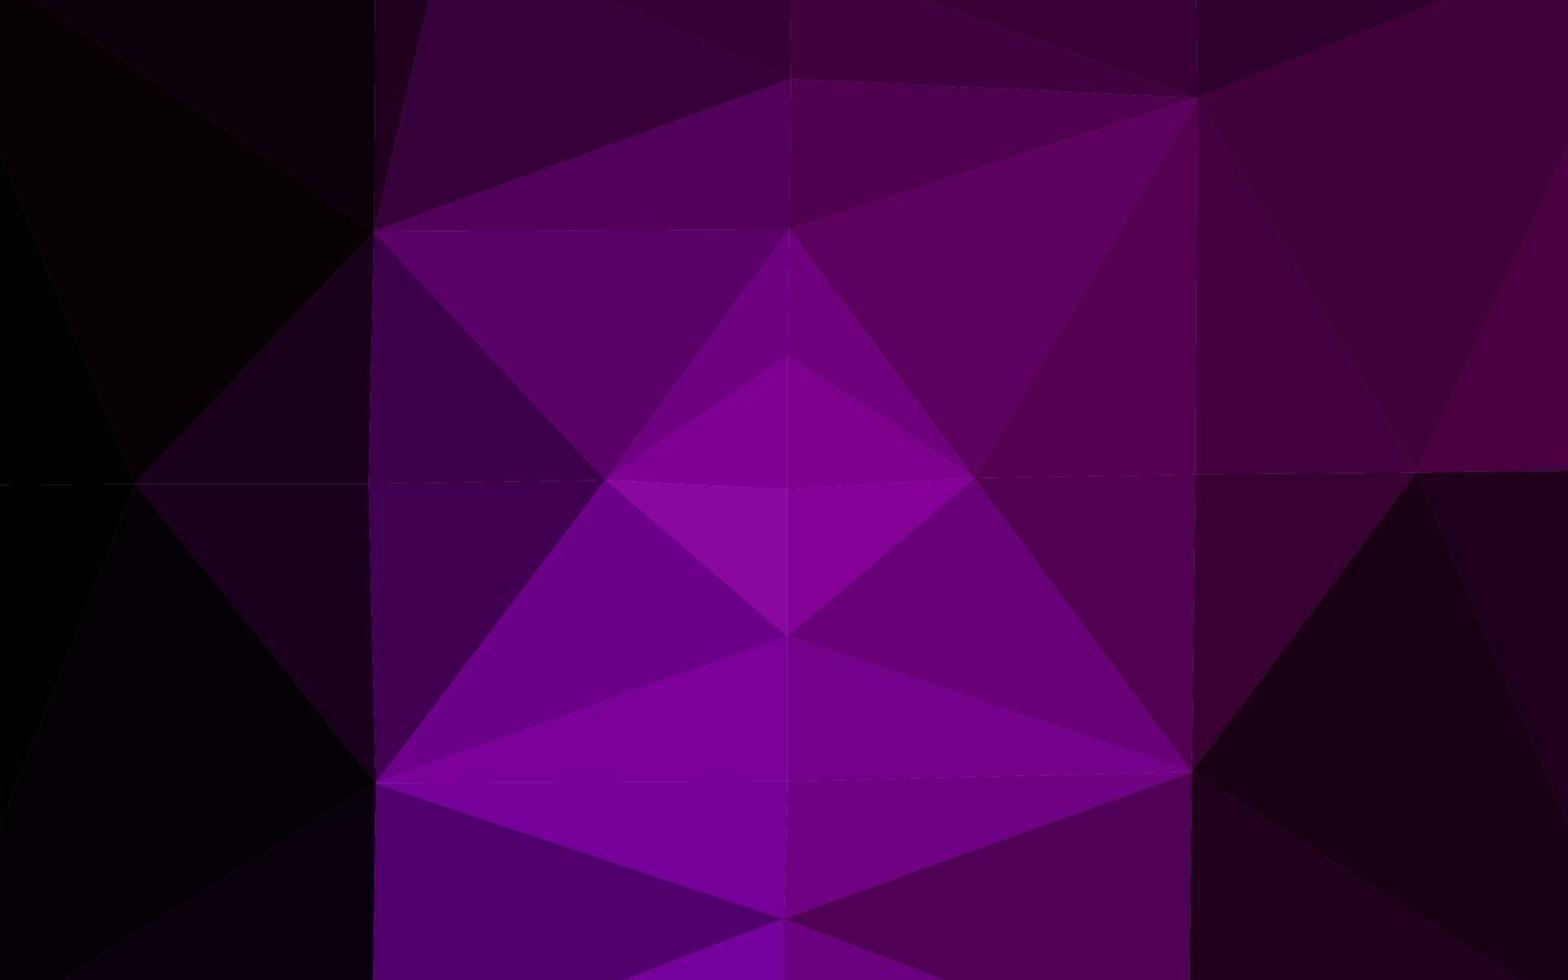 modello di mosaico triangolo vettoriale viola scuro.